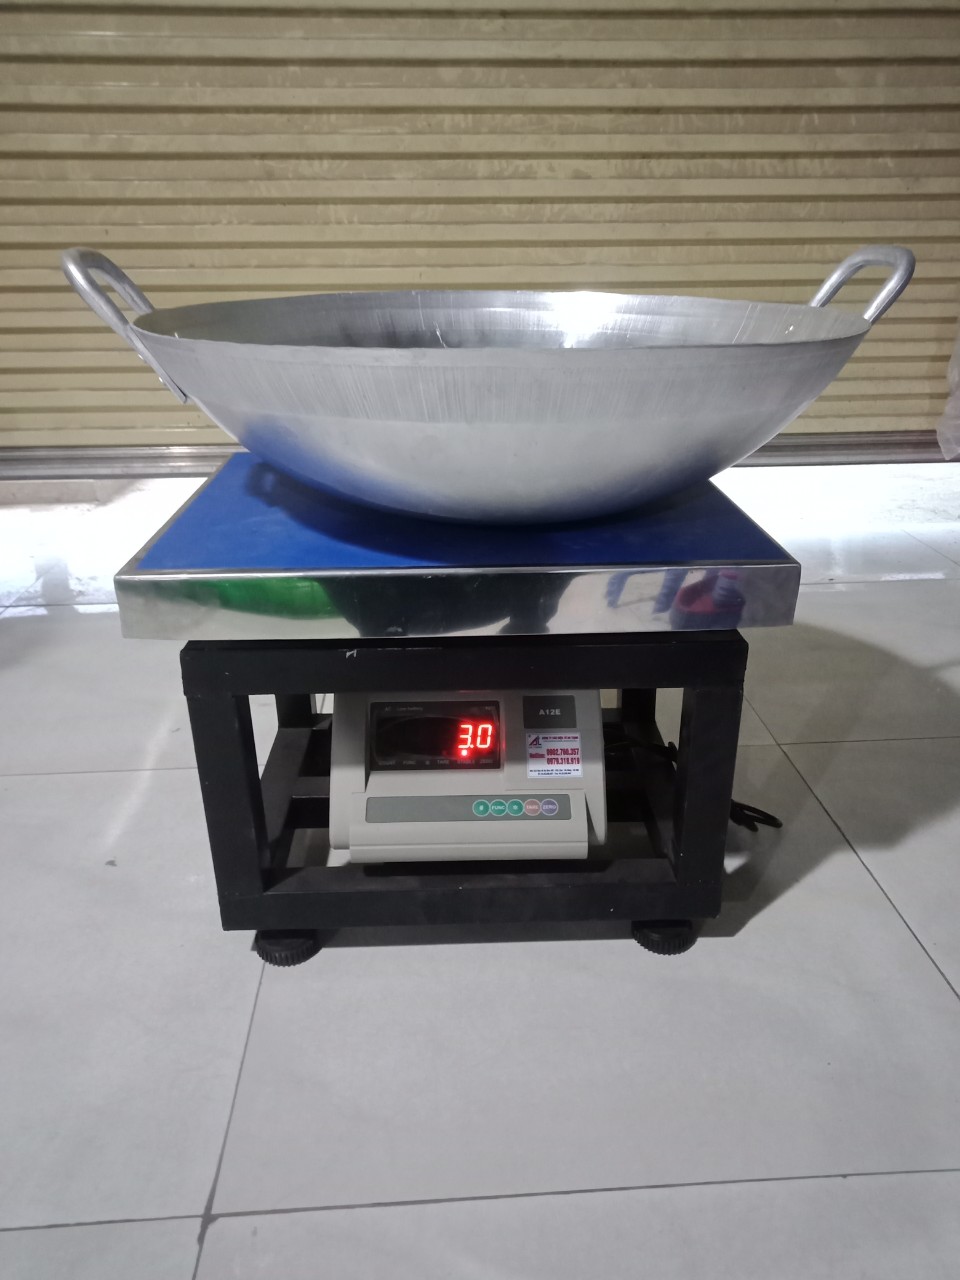 chảo nhôm công nghiệp chuyên dụng cho nhà hàng, khách sạn, bếp ăn tập thể- 60cm (3kg)